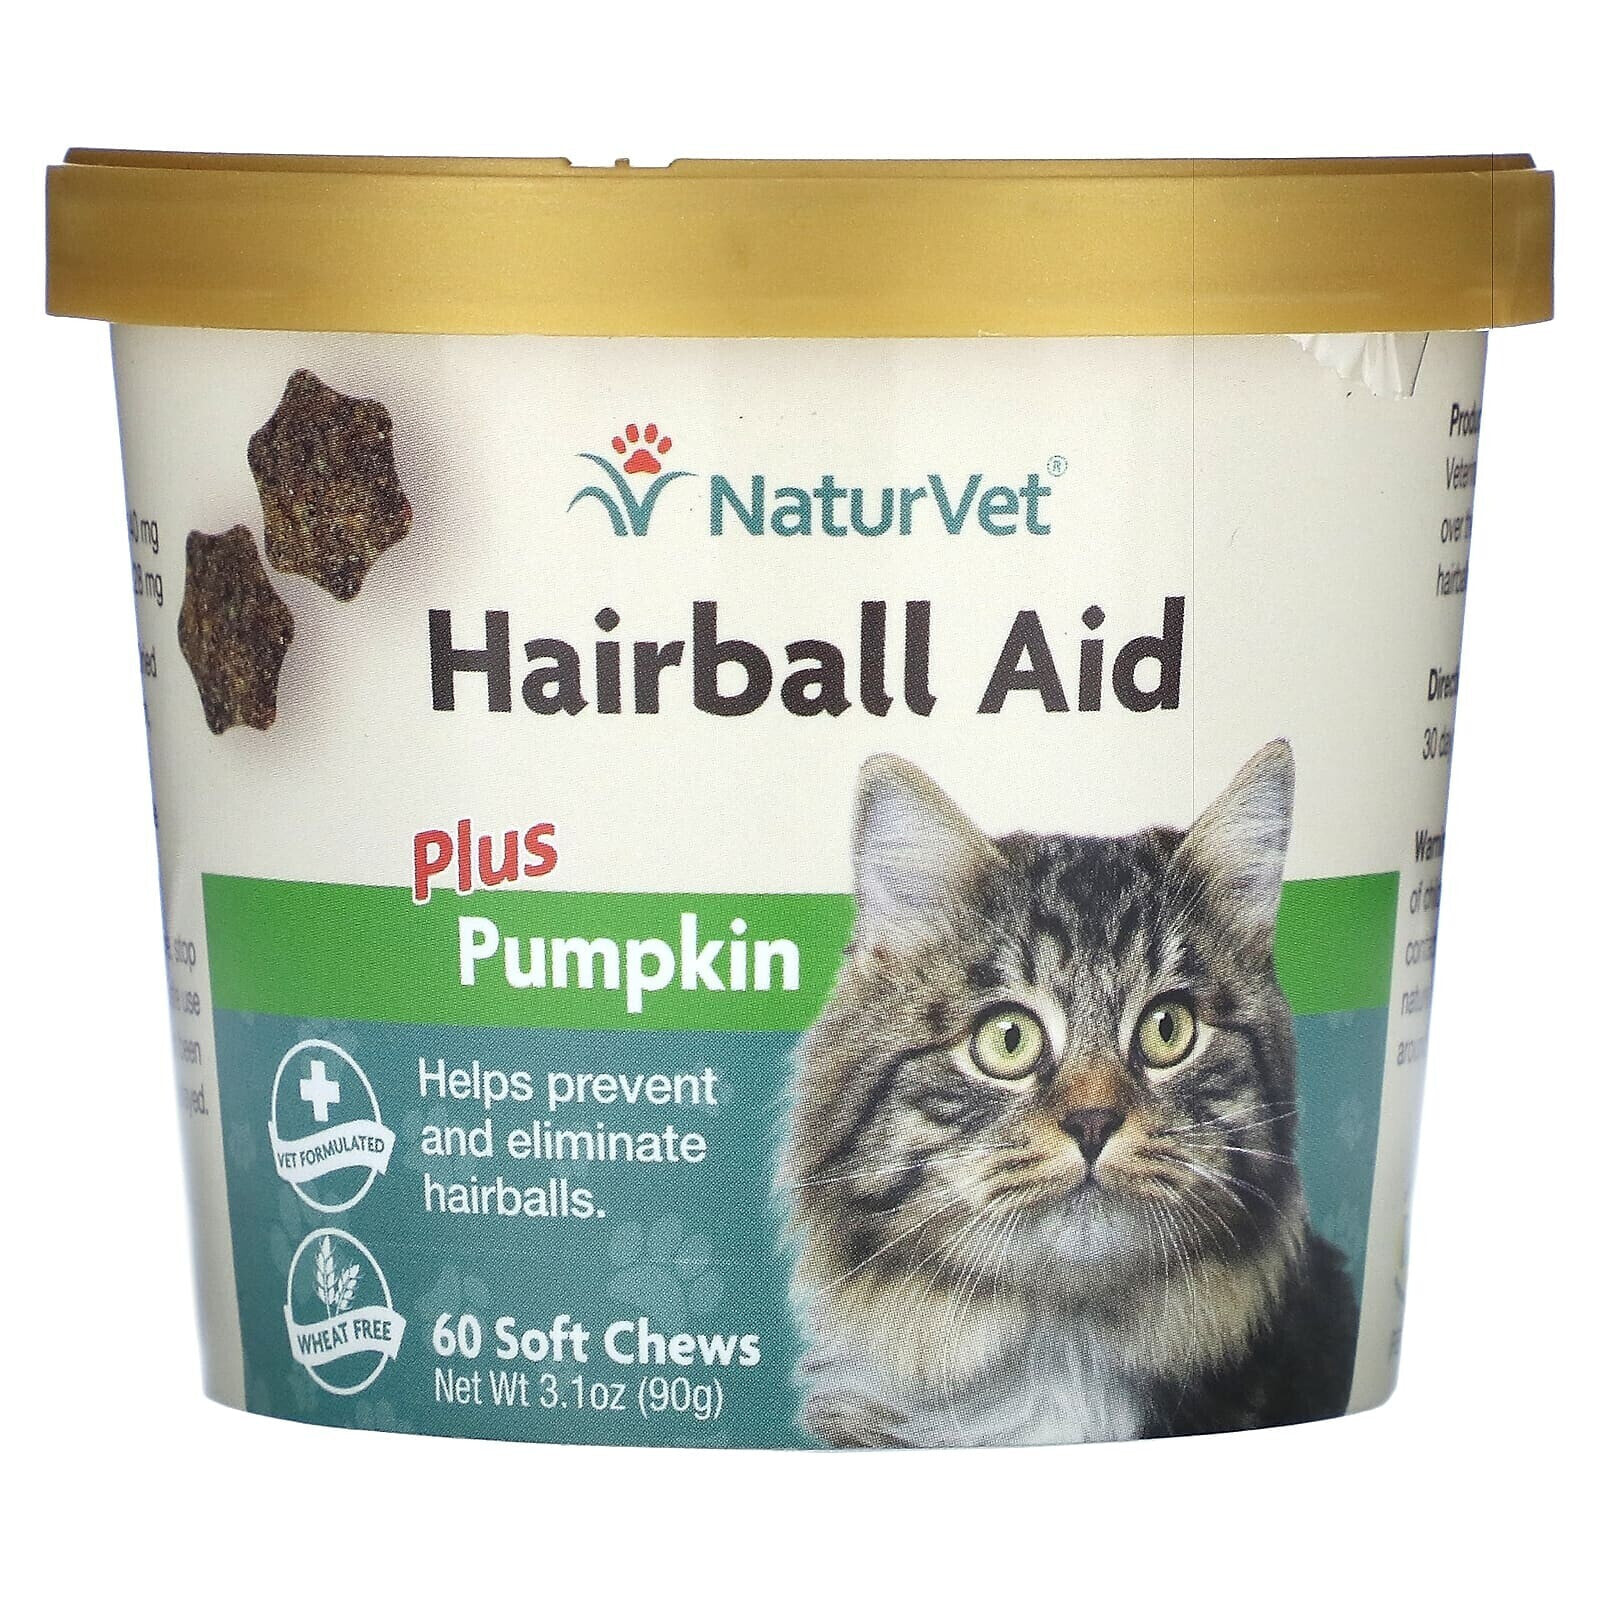 Hairball Aid Plus, Pumpkin, For Cats, 60 Soft Chews, 3.1 oz, (90 g)